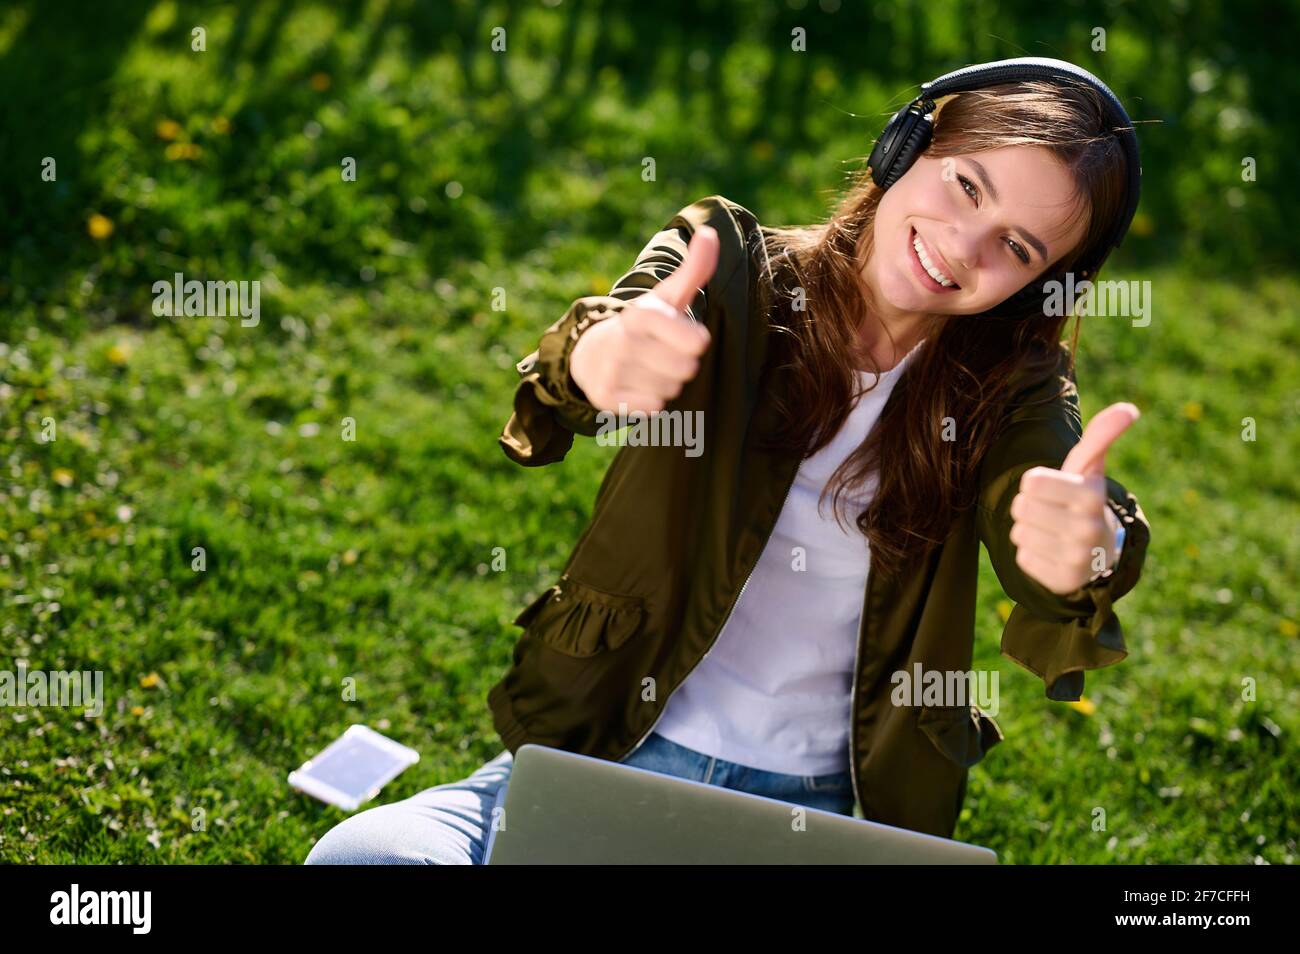 Sorridente studente donna attraente seduta sull'erba all'aperto utilizzando laptop e cuffie e mostra il movimento del pollice verso l'alto Foto Stock